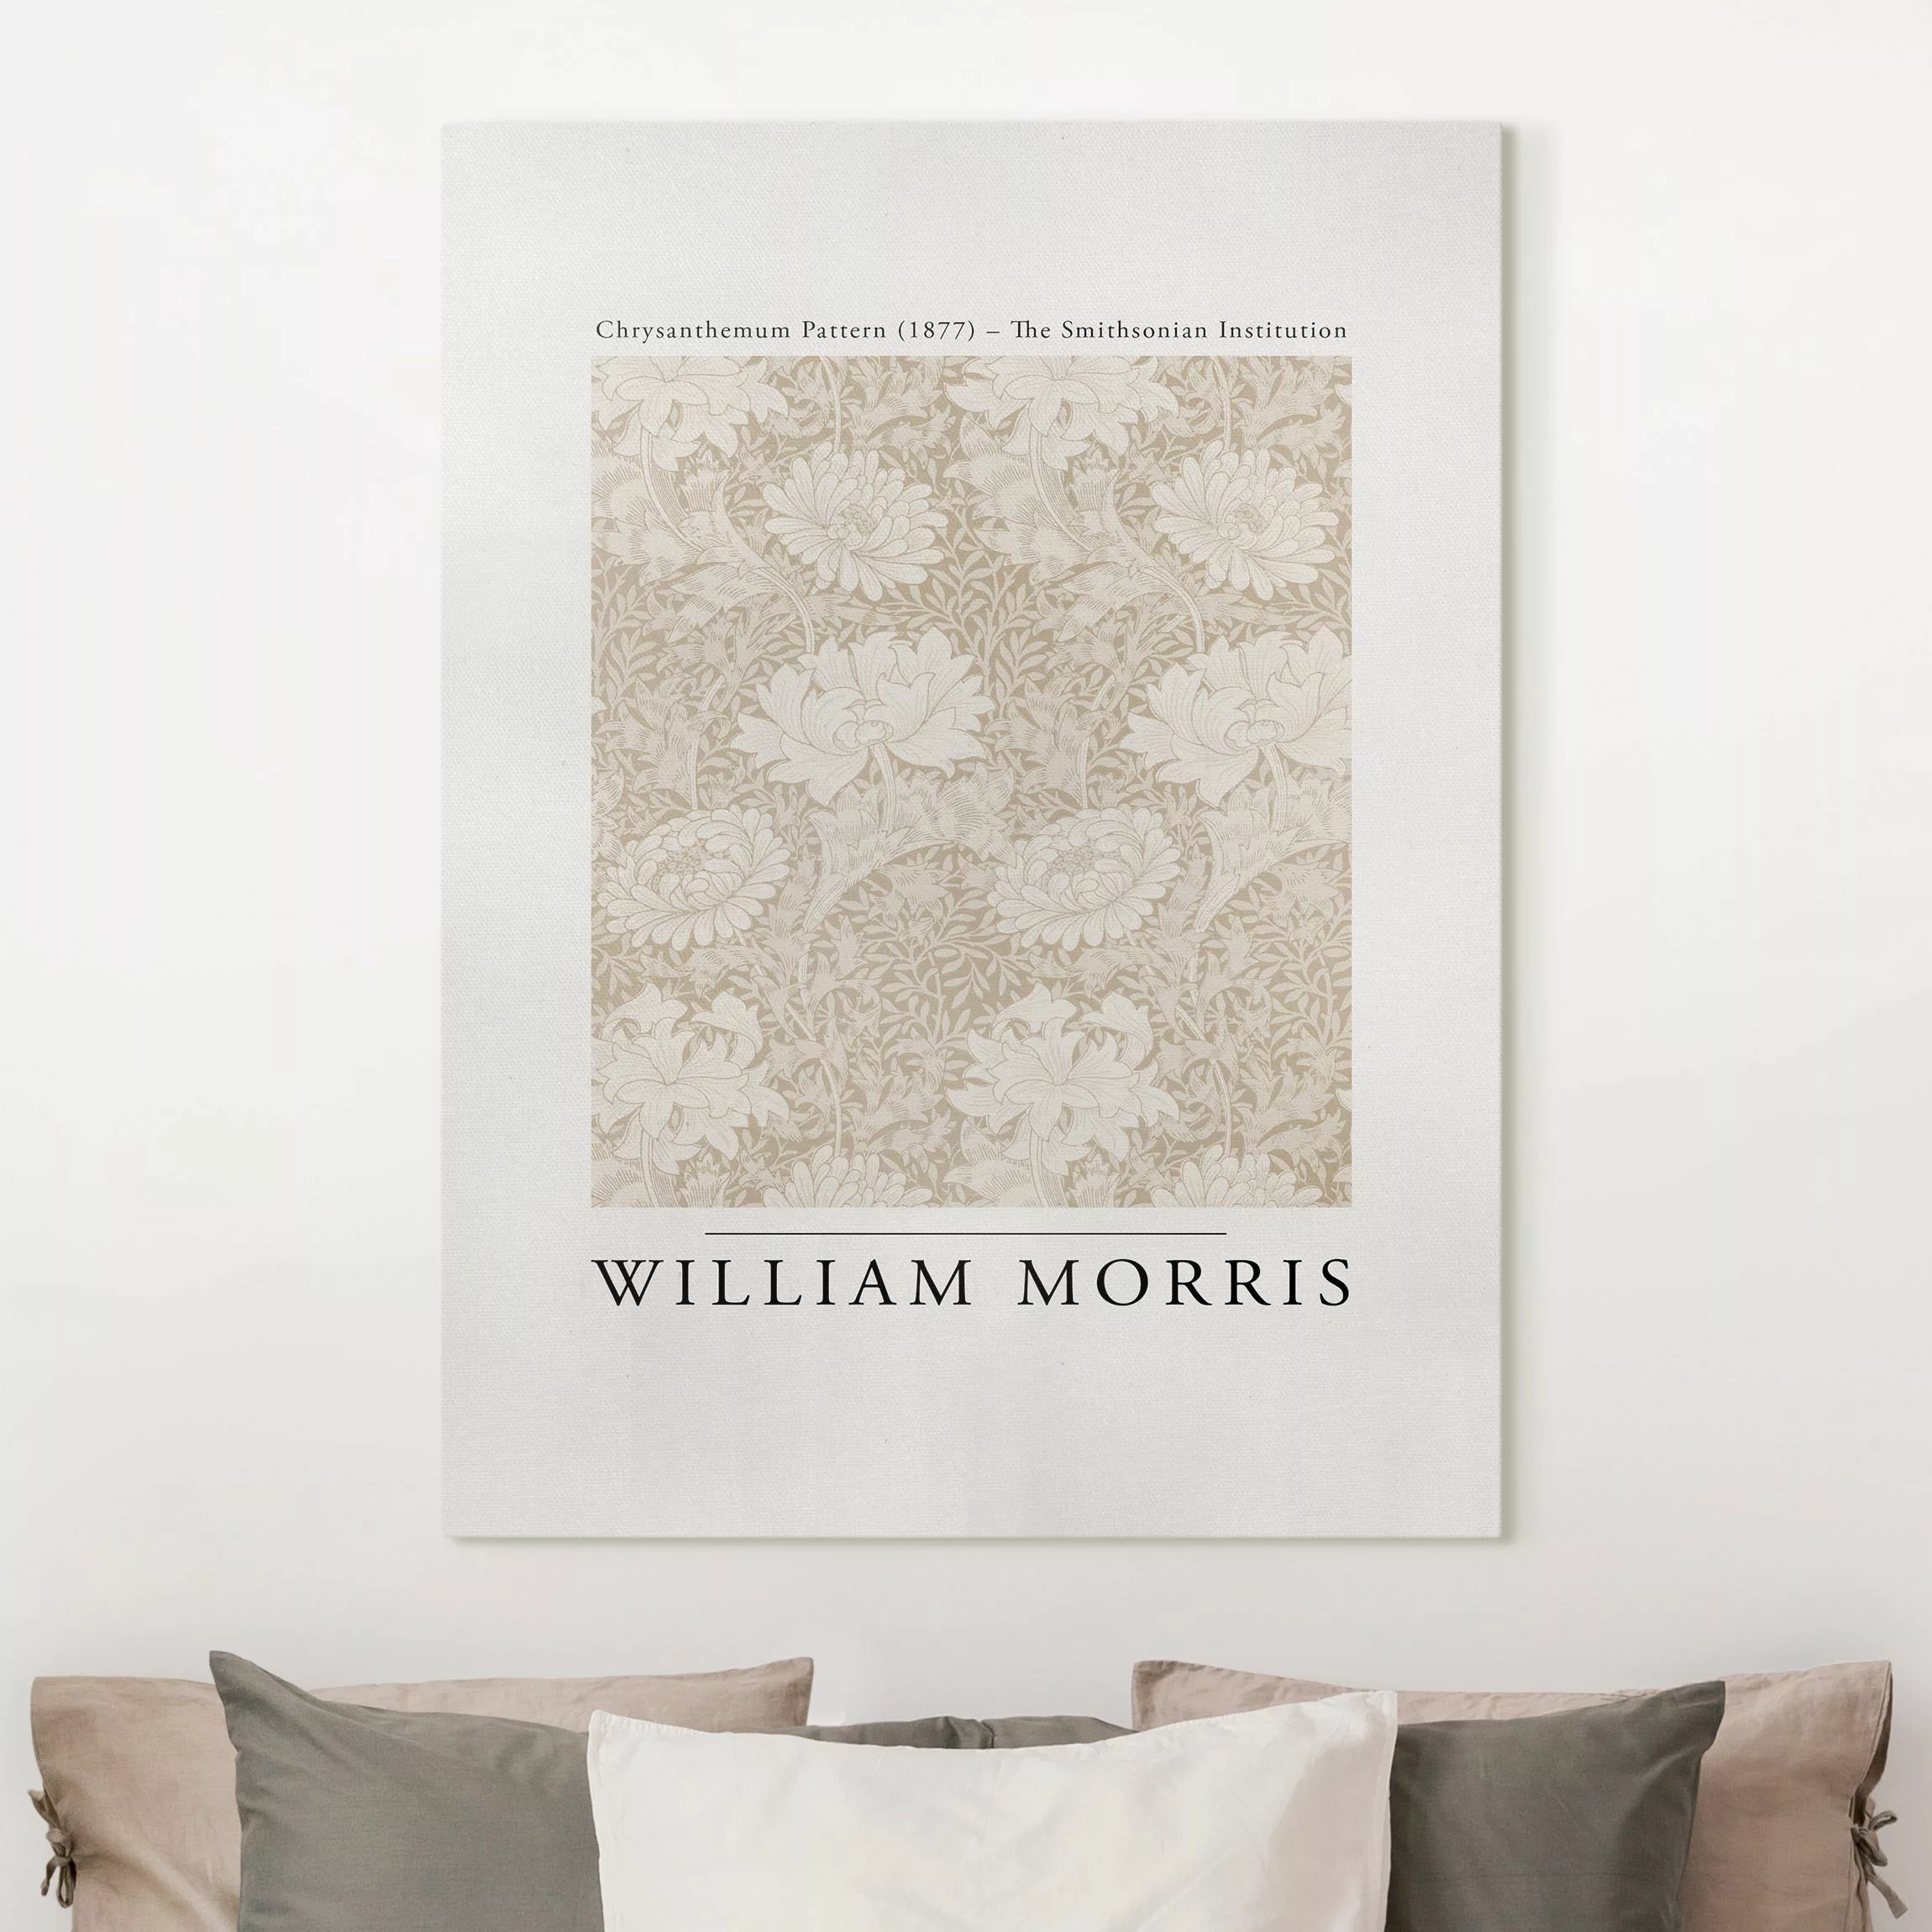 Leinwandbild William Morris - Chrysanthemum Pattern Beige günstig online kaufen